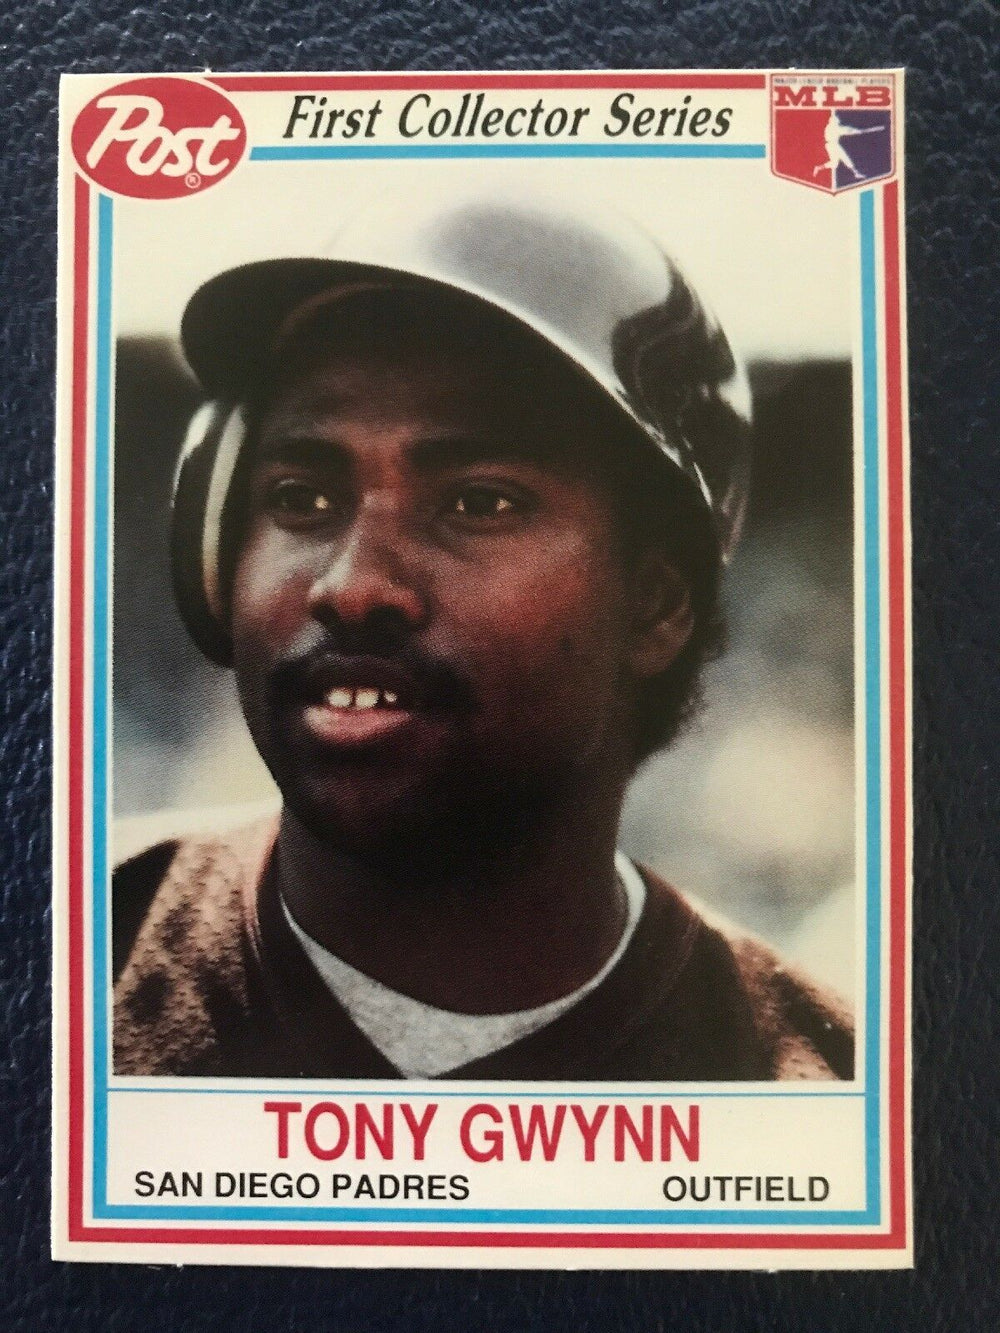 Tony Gwynn 1990 Post Cereal Series Mint Card #5